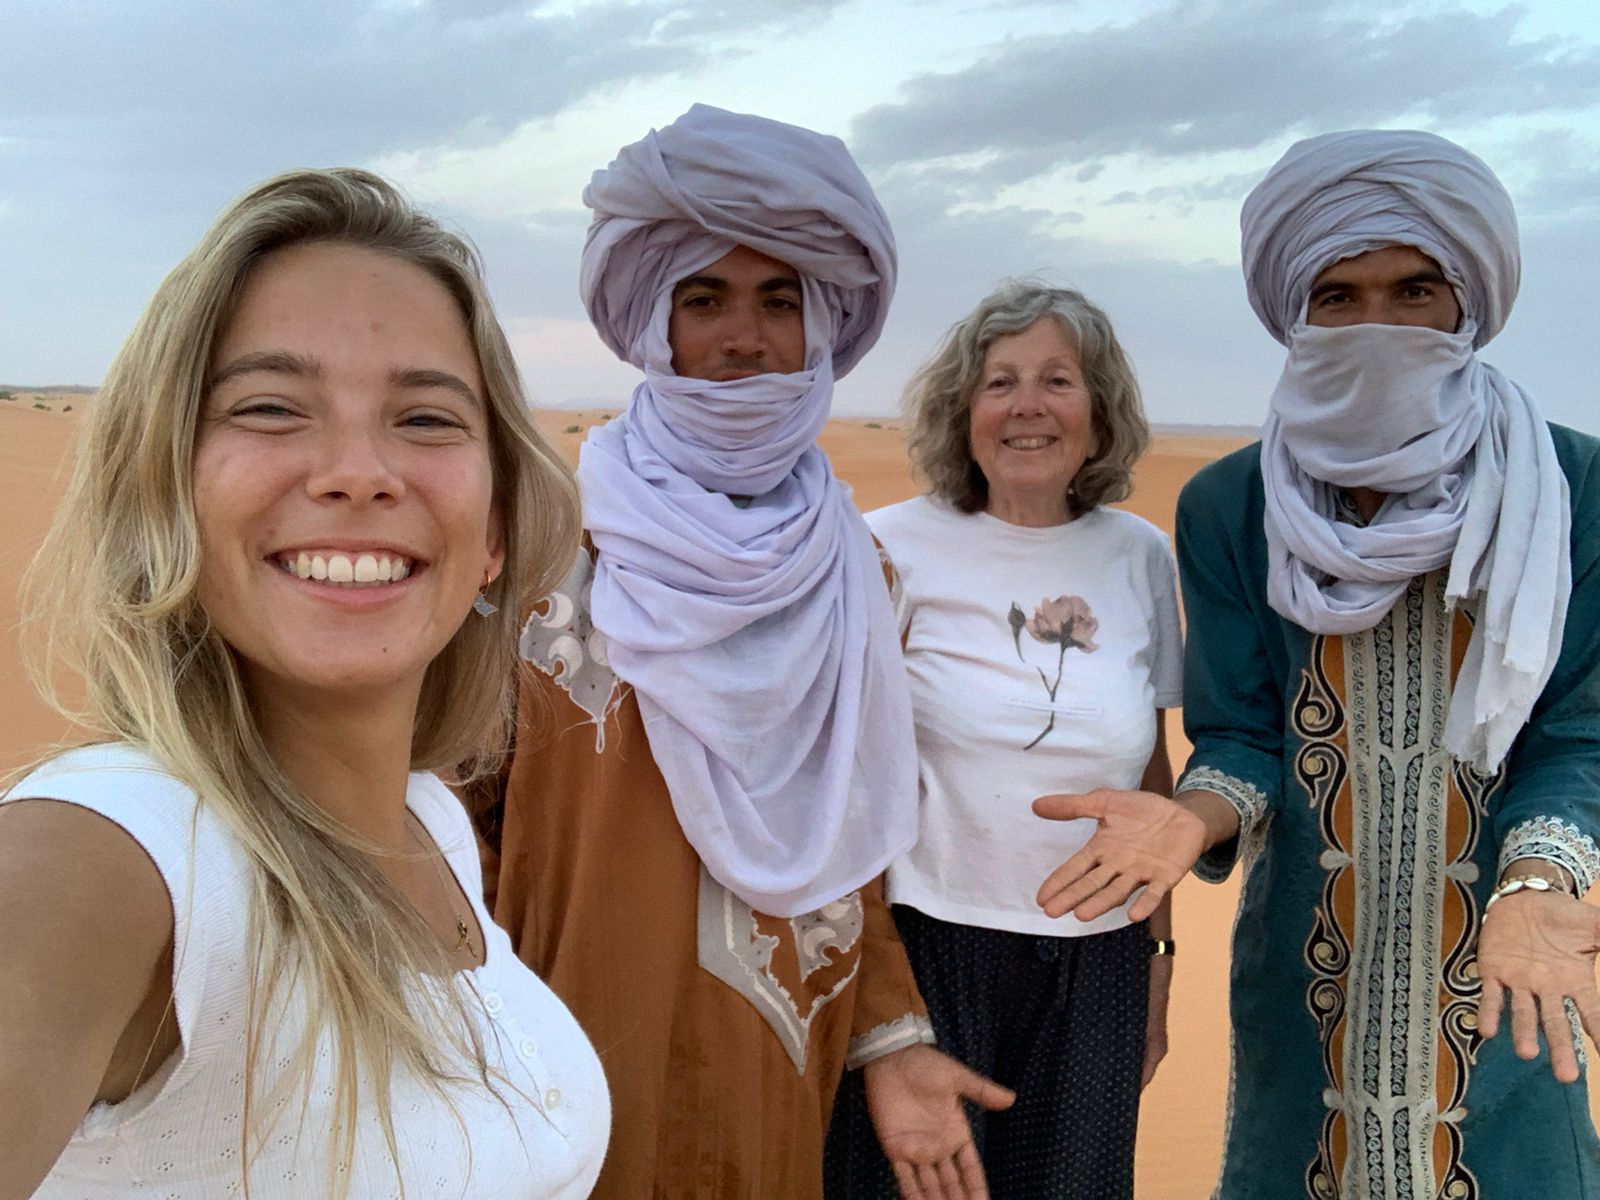 3 Days Sahara Desert Trip from Marrakech